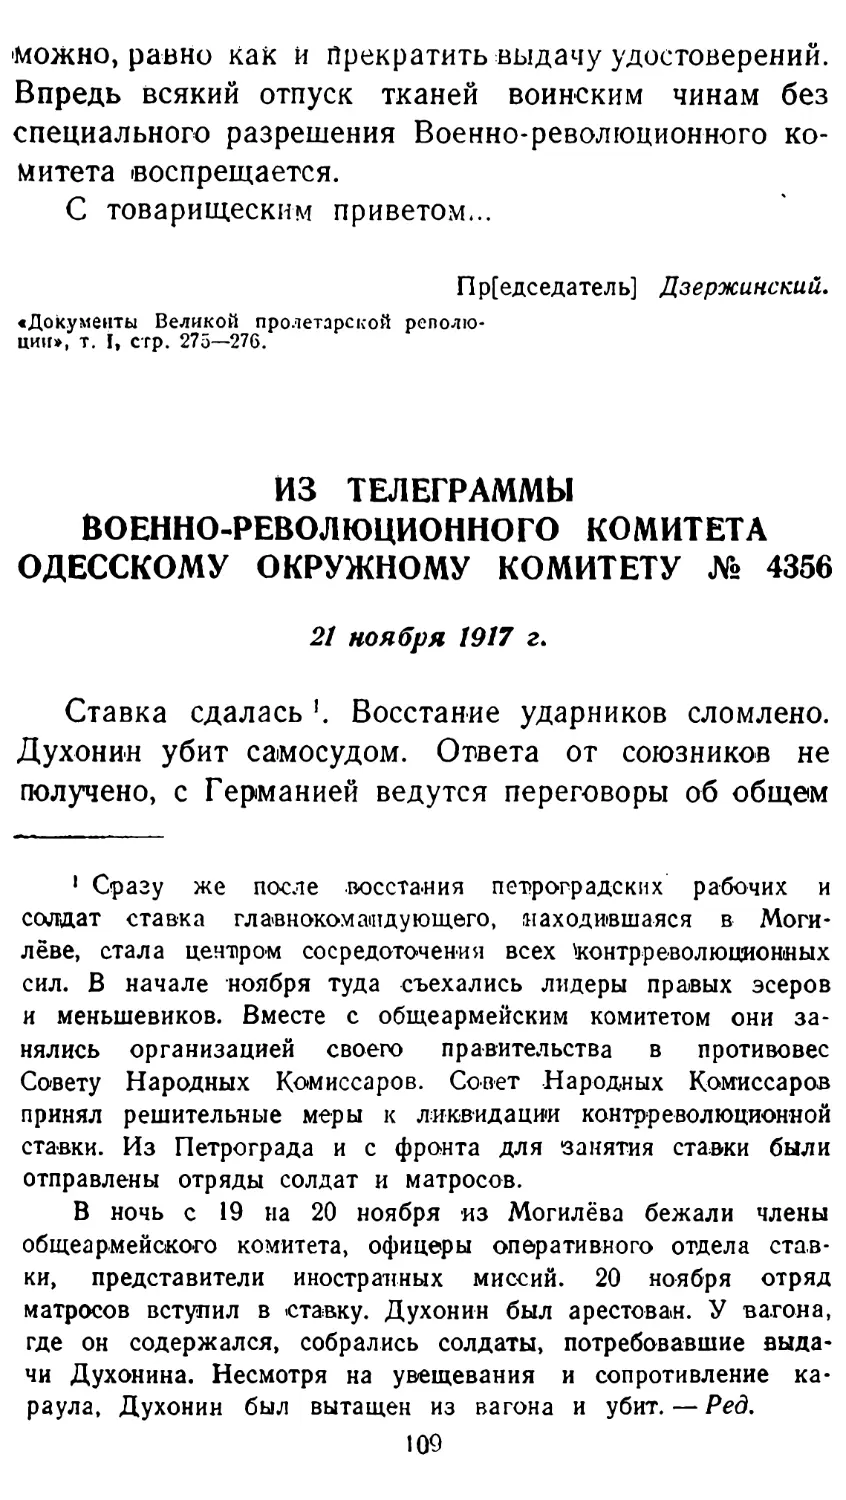 Из телеграммы Военно-революционного комитета Одесскому окружному комитету № 4356